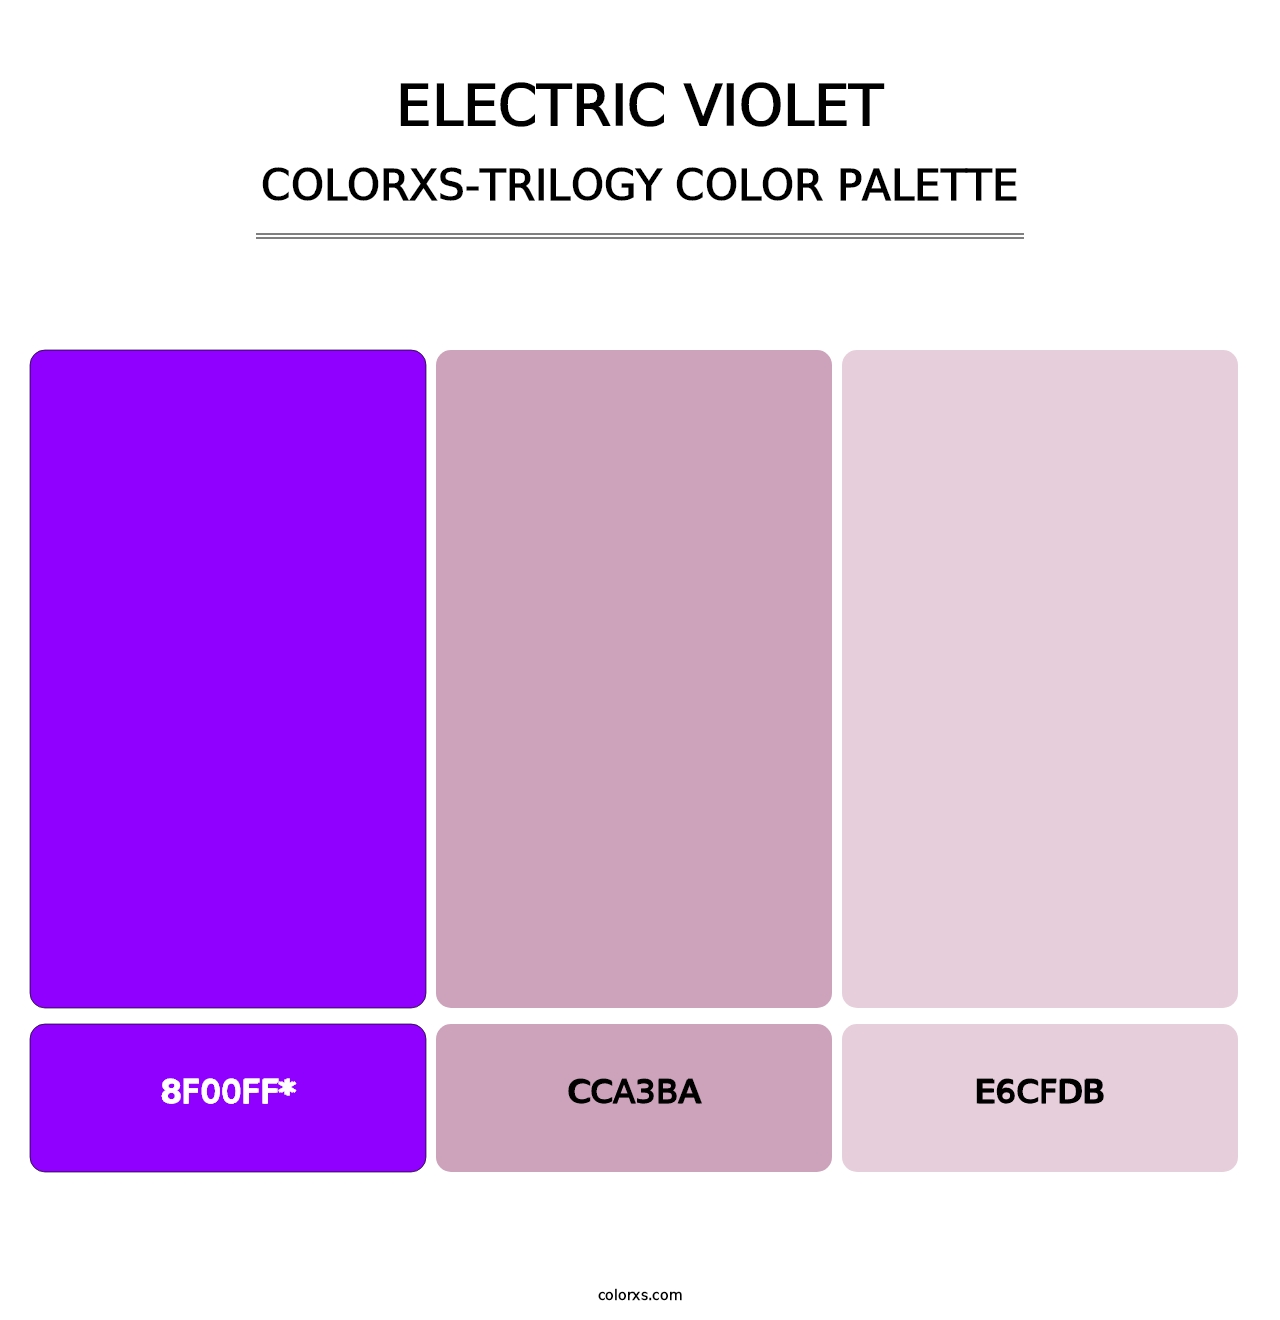 Electric Violet - Colorxs Trilogy Palette